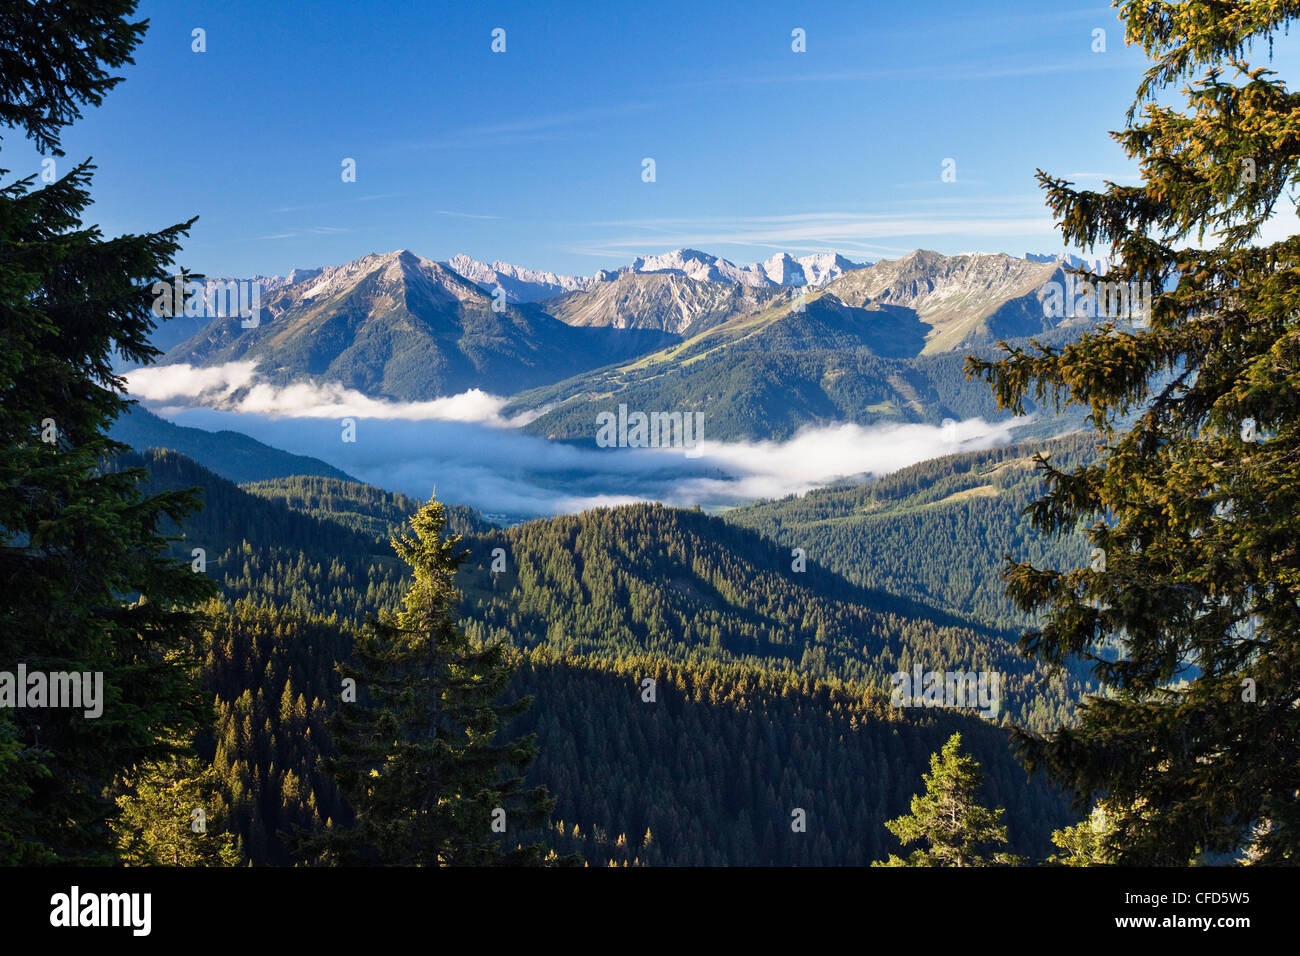 Vista desde las montañas hacia el valle Achental Blauberge, Alpes, Austria, Europa Foto de stock